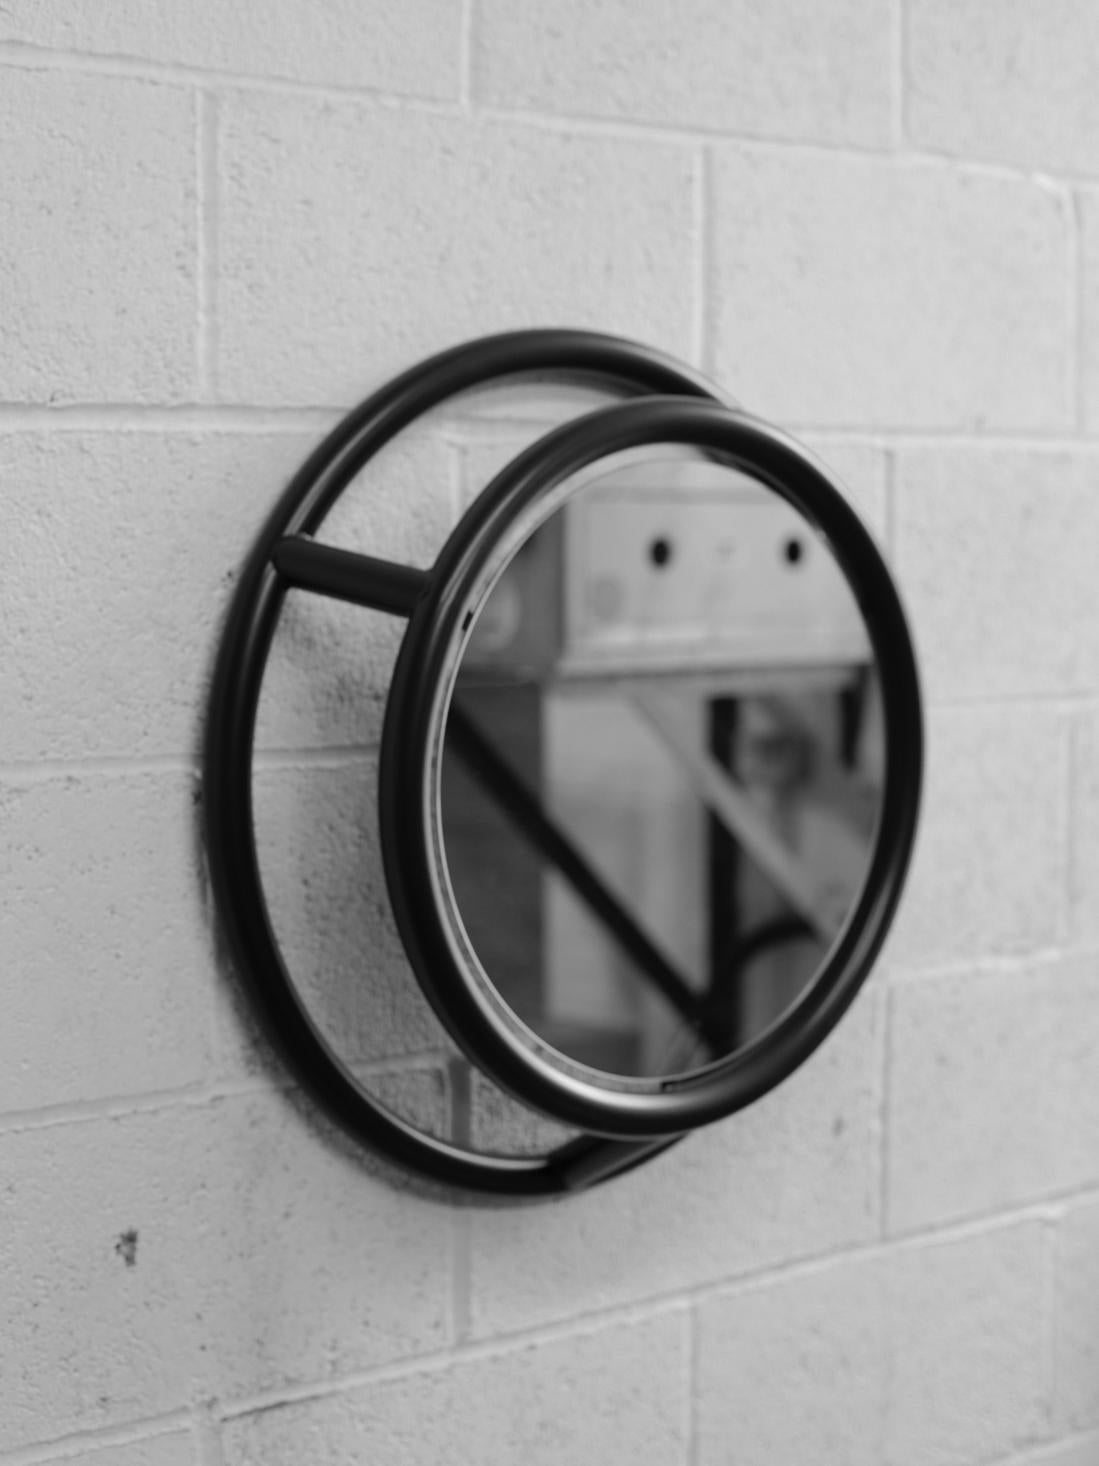 Einzigartiger runder und runder Spiegel von Kim Thome
Abmessungen: D 60 cm
MATERIALIEN: Stahl, Schwimmspiegel

Kim Thomé ist ein norwegischer Designer, der in London lebt.